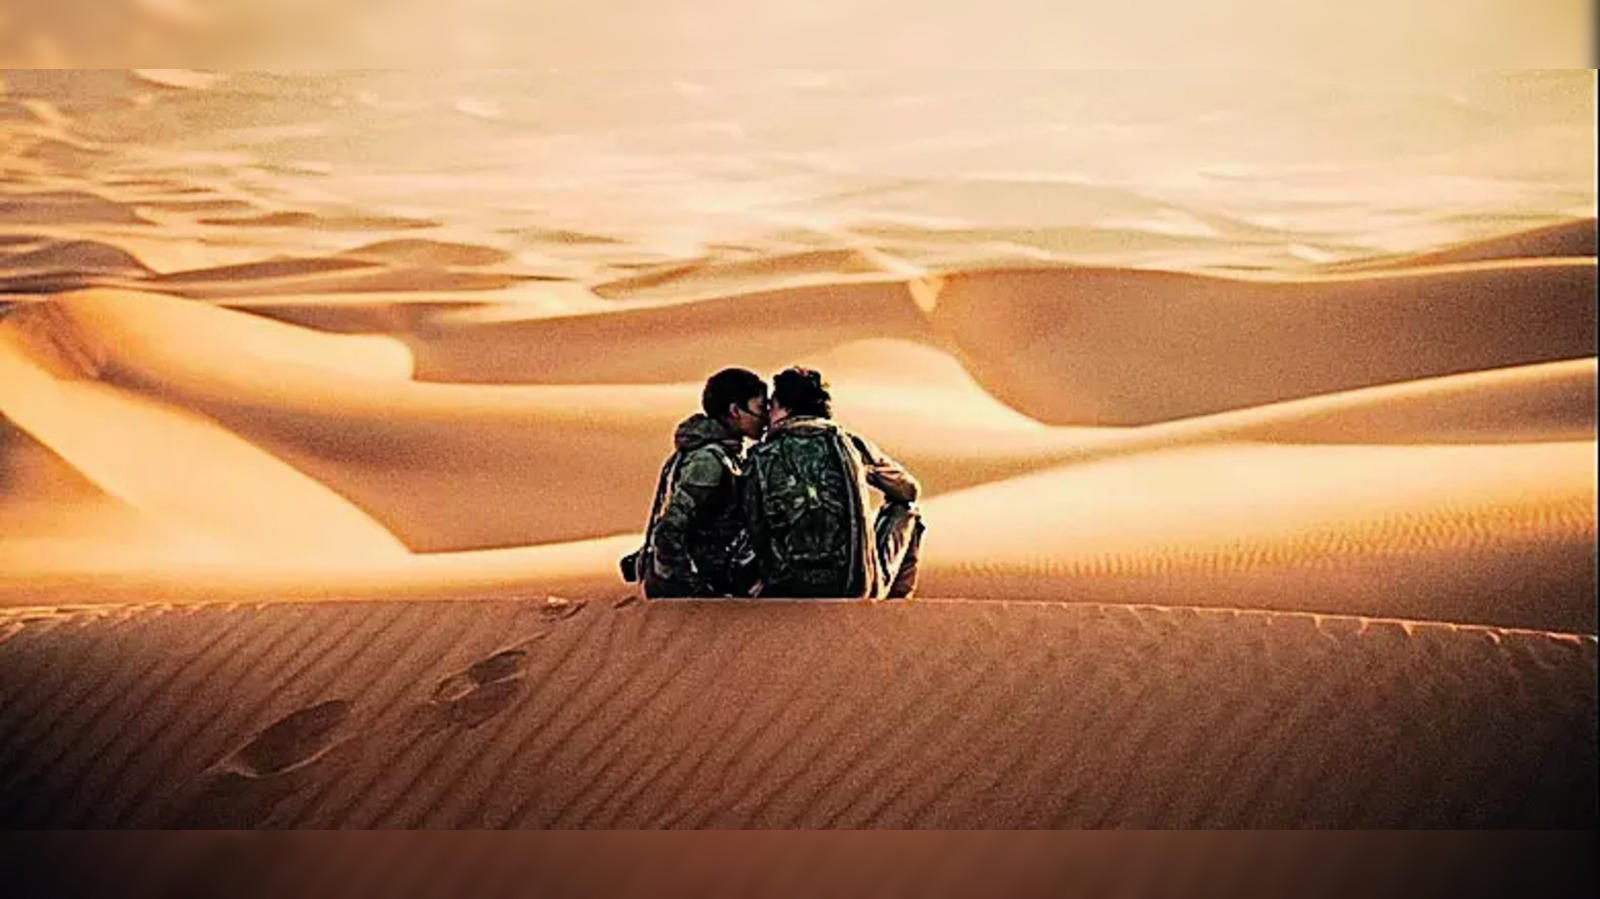 Regarder la vidéo Dune 3 : au-delà de l’adaptation de Messiah, l’intégration d’une histoire vieille de 16 ans s’impose